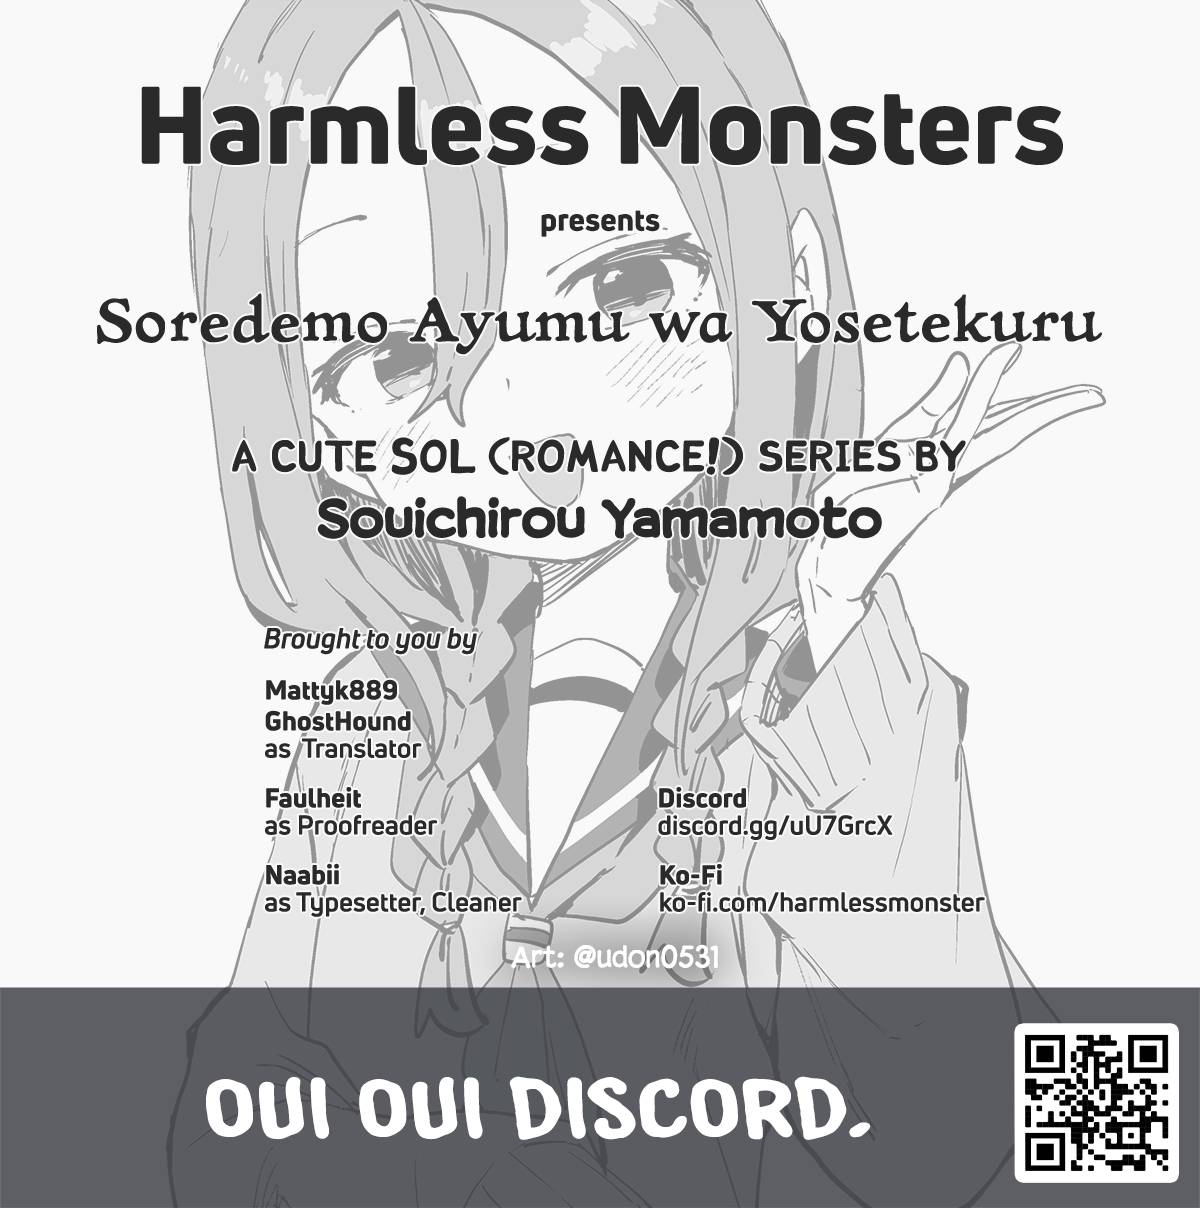 Soredemo Ayumu wa Yosetekuru - 09 - 17 - Lost in Anime